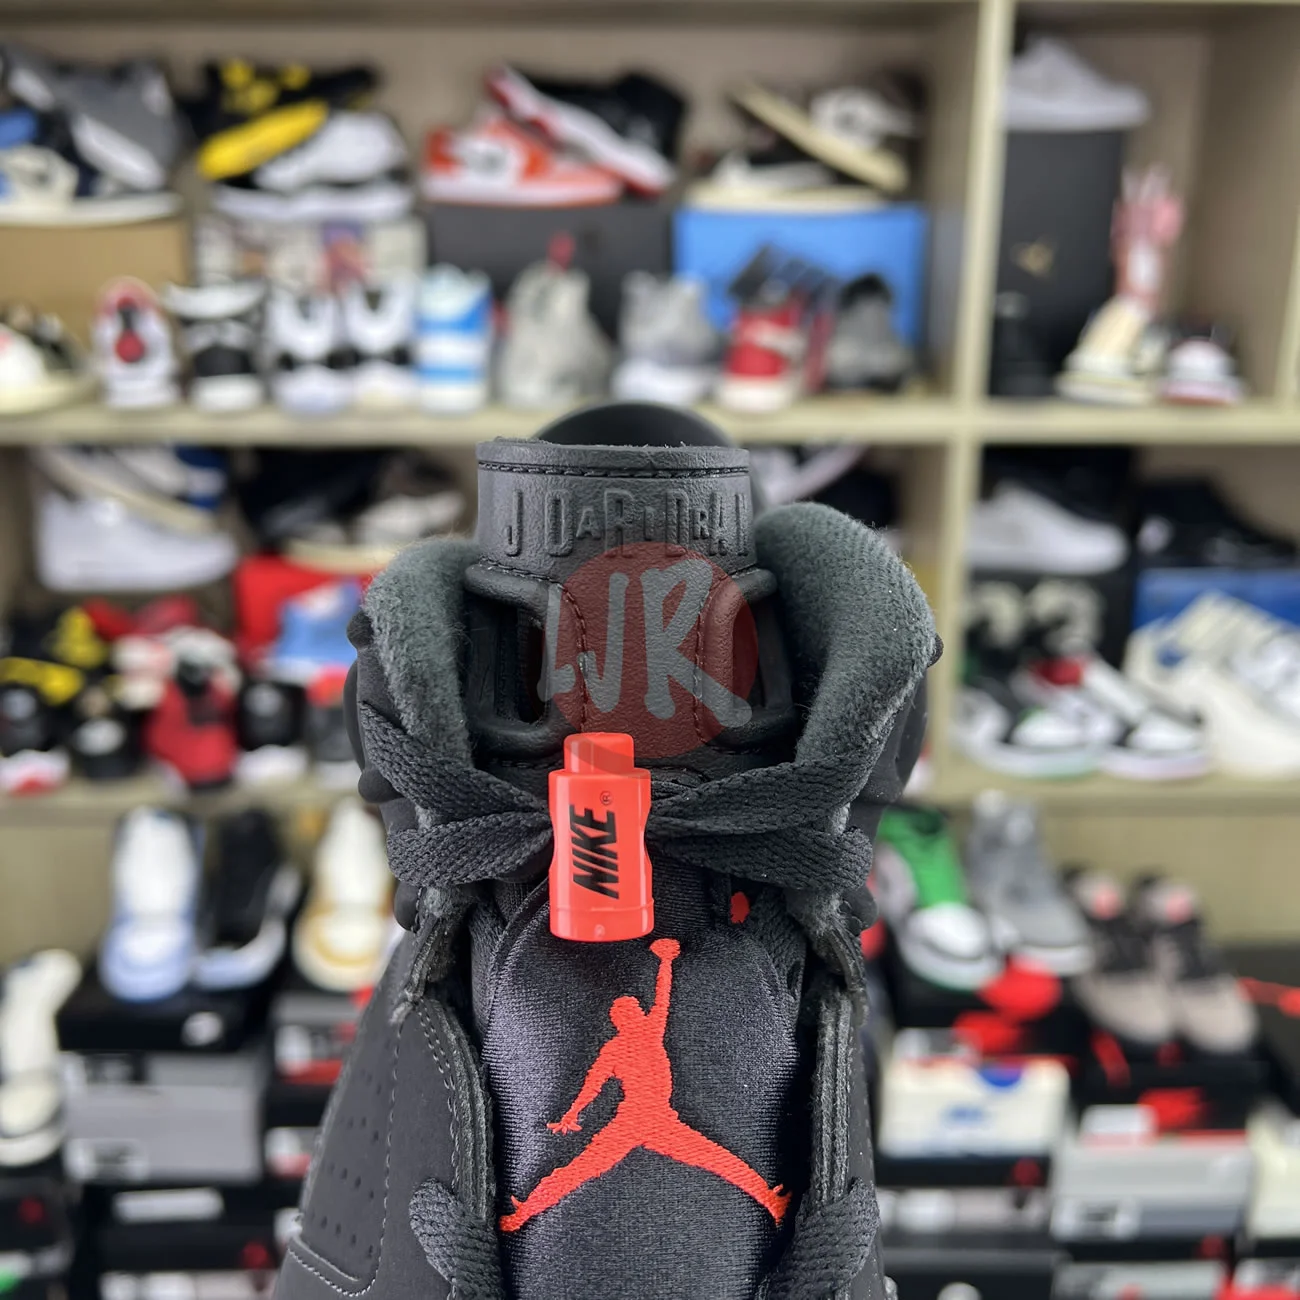 Air Jordan 6 Retro Black Infrared 2019 384664 060 Ljr Sneakers (7) - bc-ljr.net